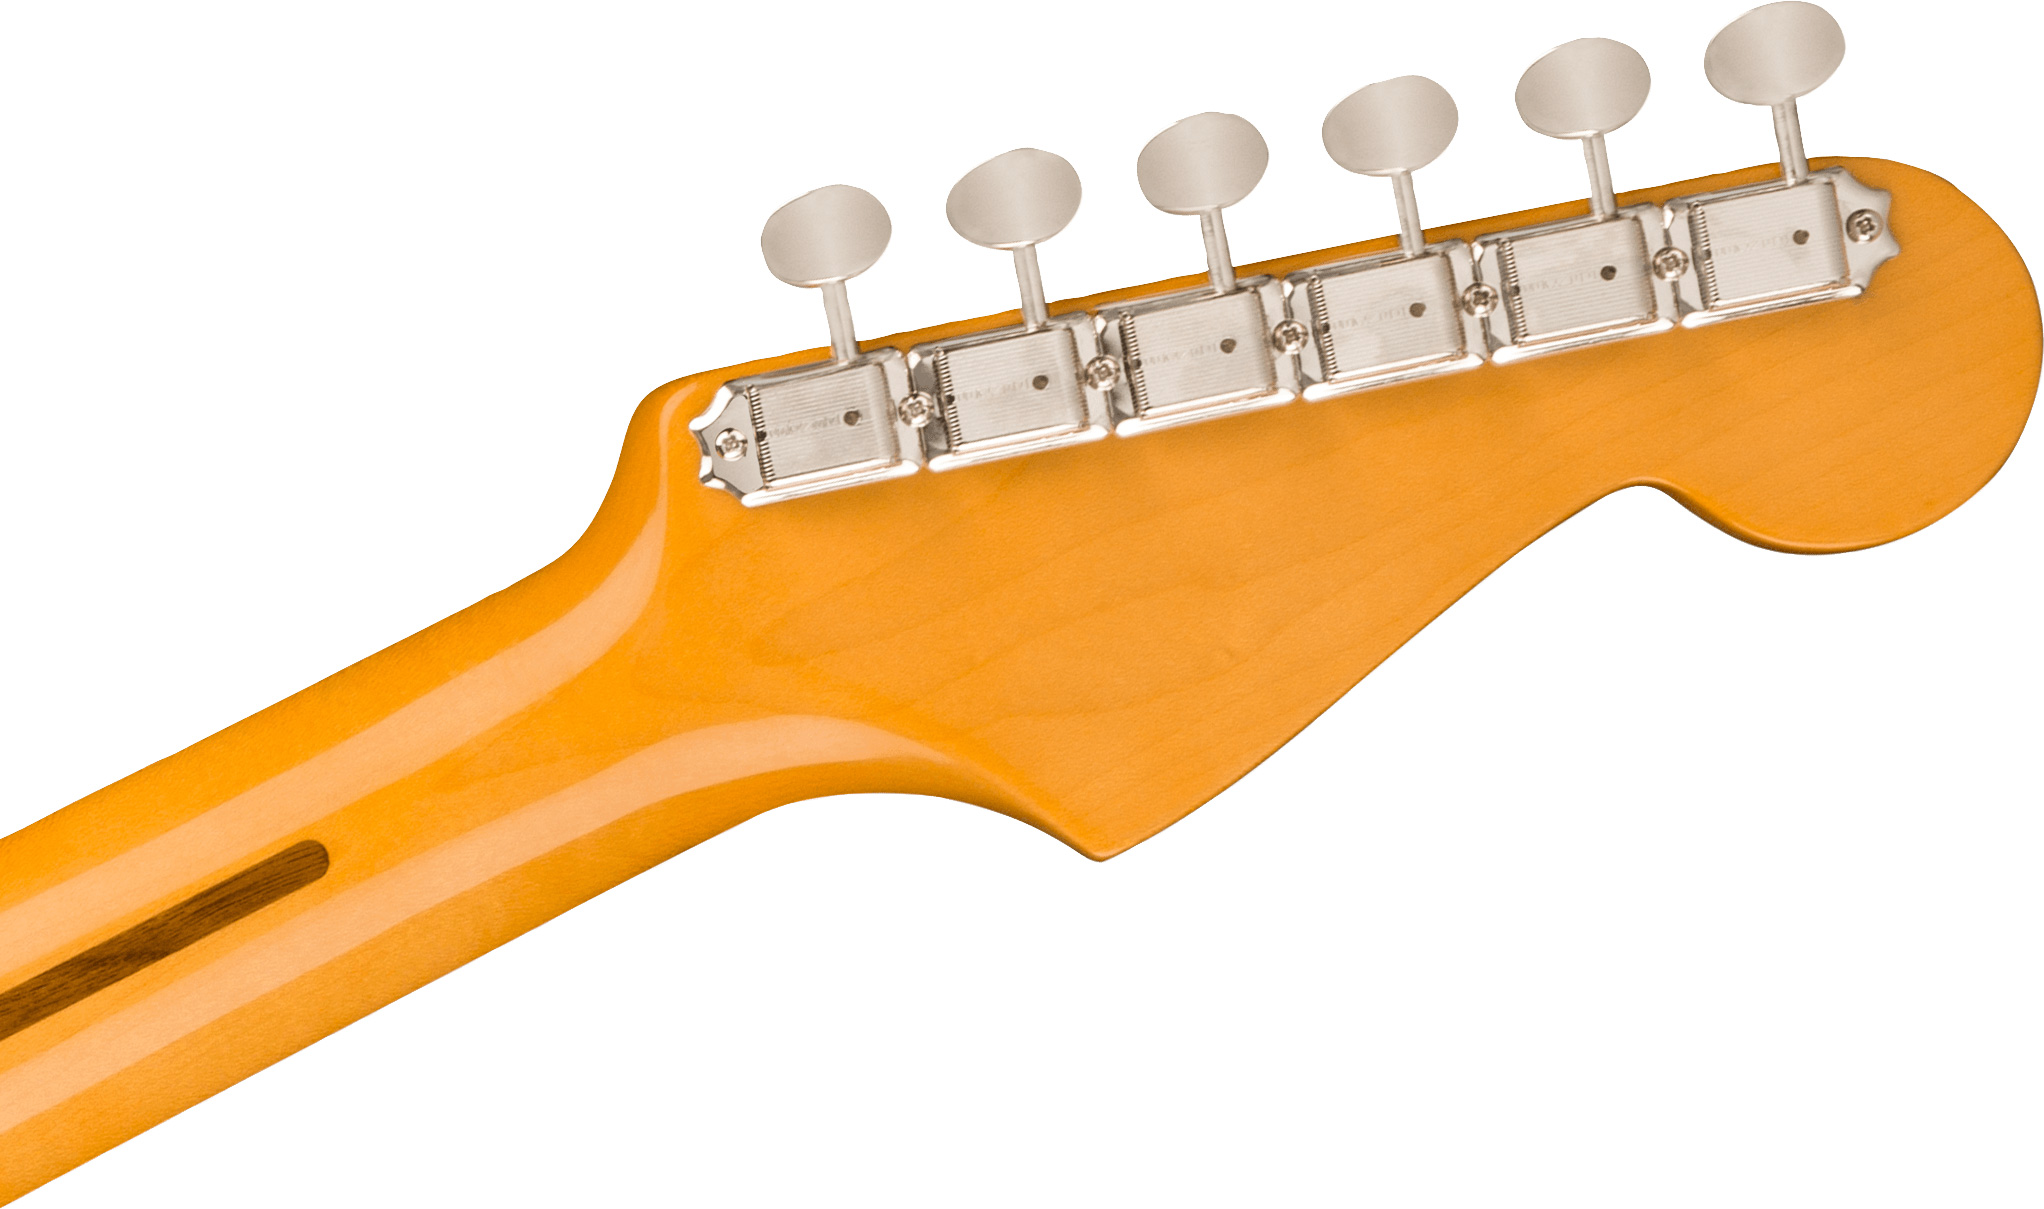 Fender Strat 1957 American Vintage Ii Lh Gaucher Usa 3s Trem Mn - Vintage Blonde - Linkshandige elektrische gitaar - Variation 3